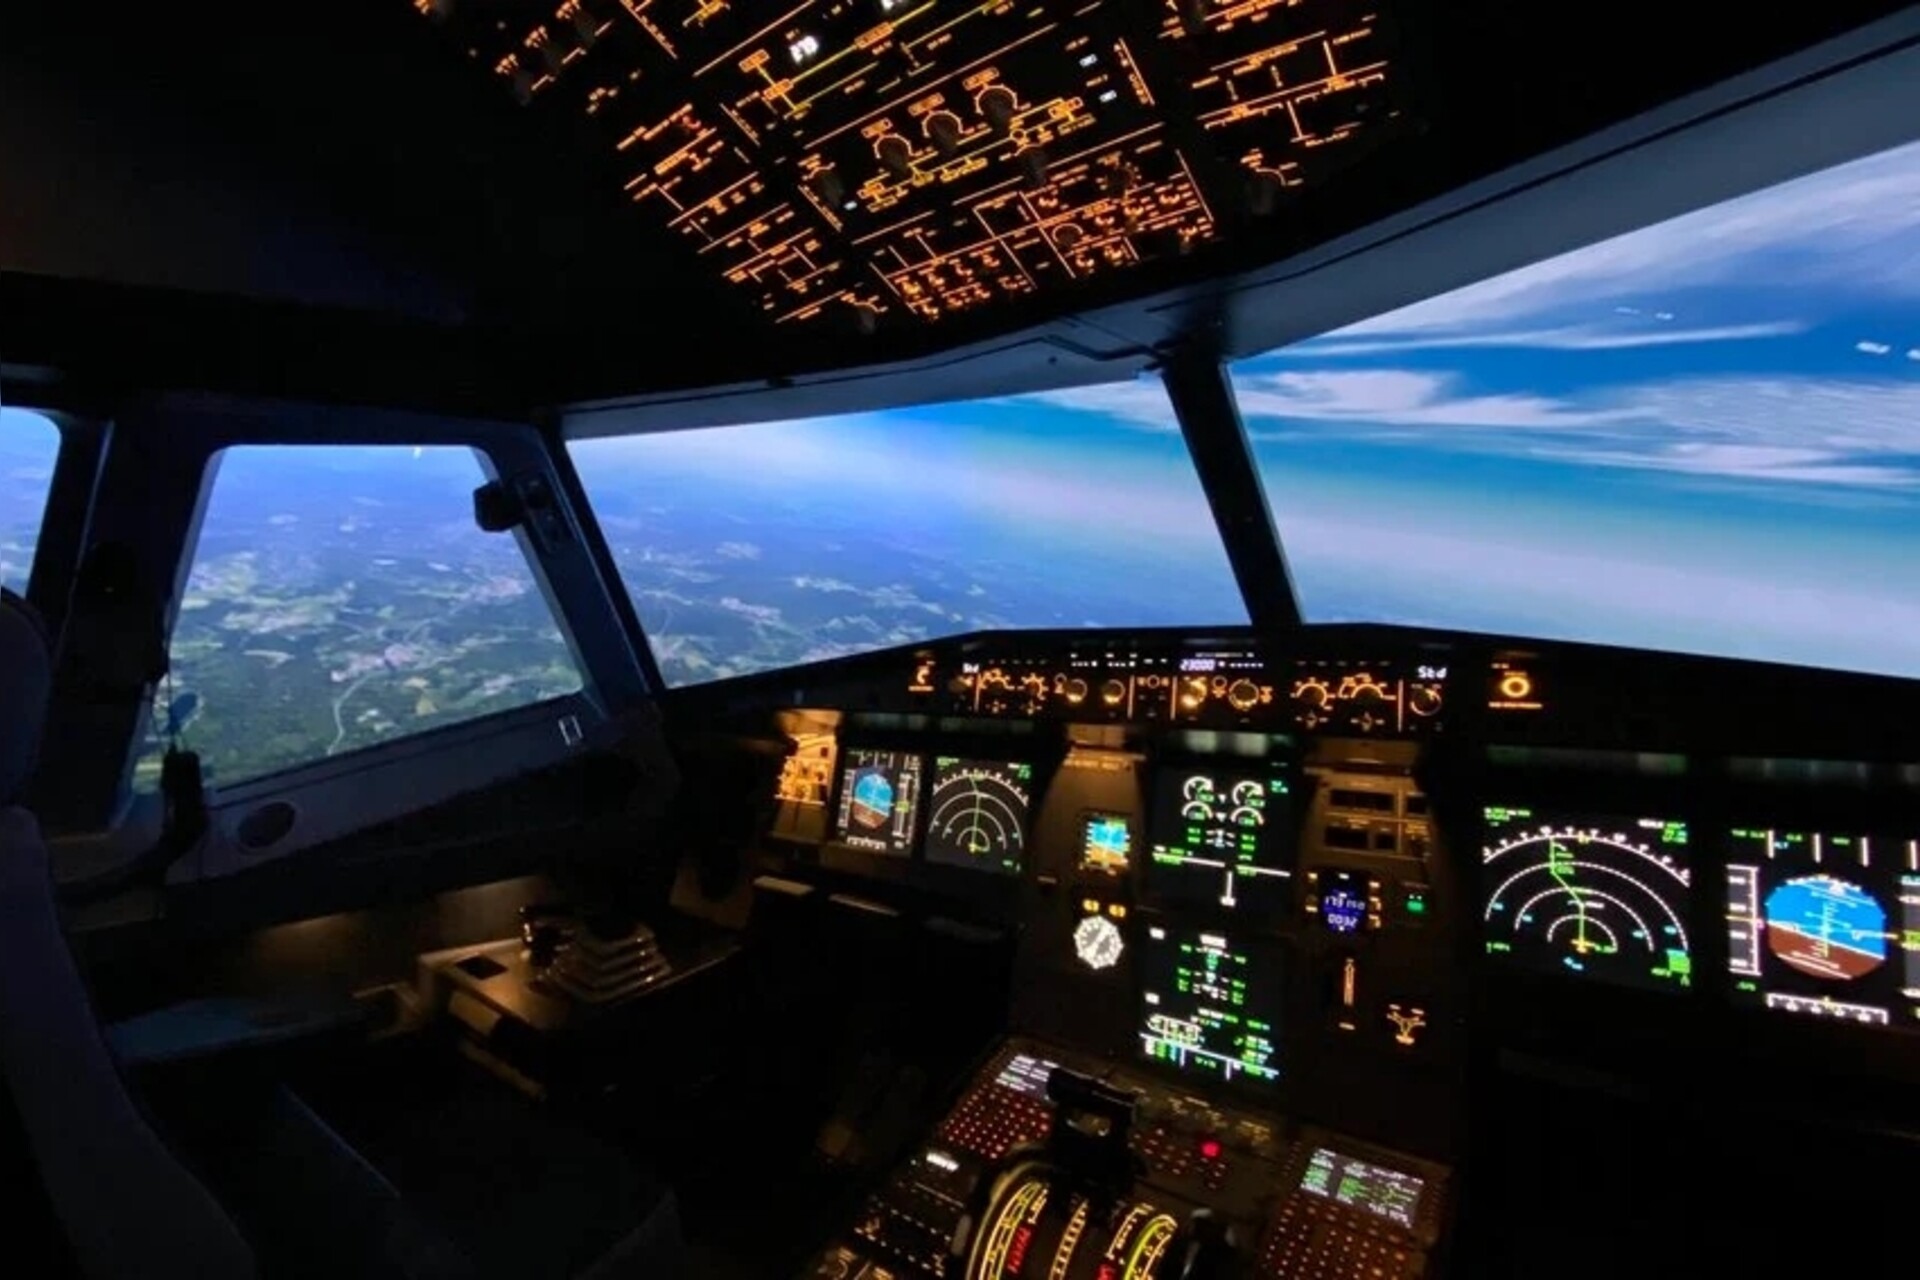 Flugsimulator Airbus A320